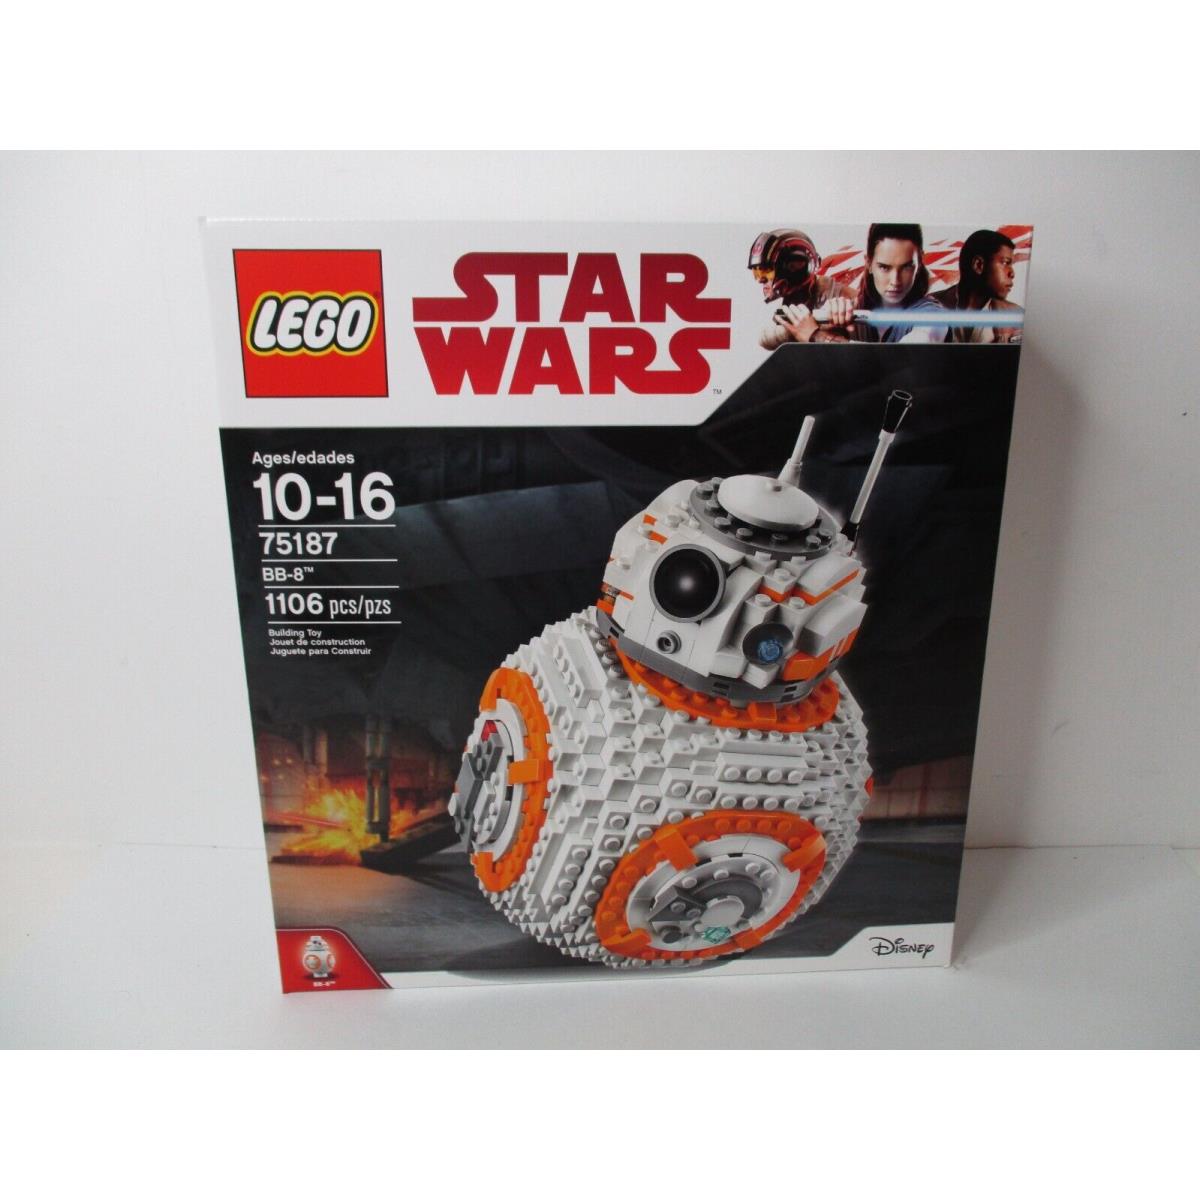 Lego Star Wars BB-8 Droid Retired Set 75187 1106 Pcs